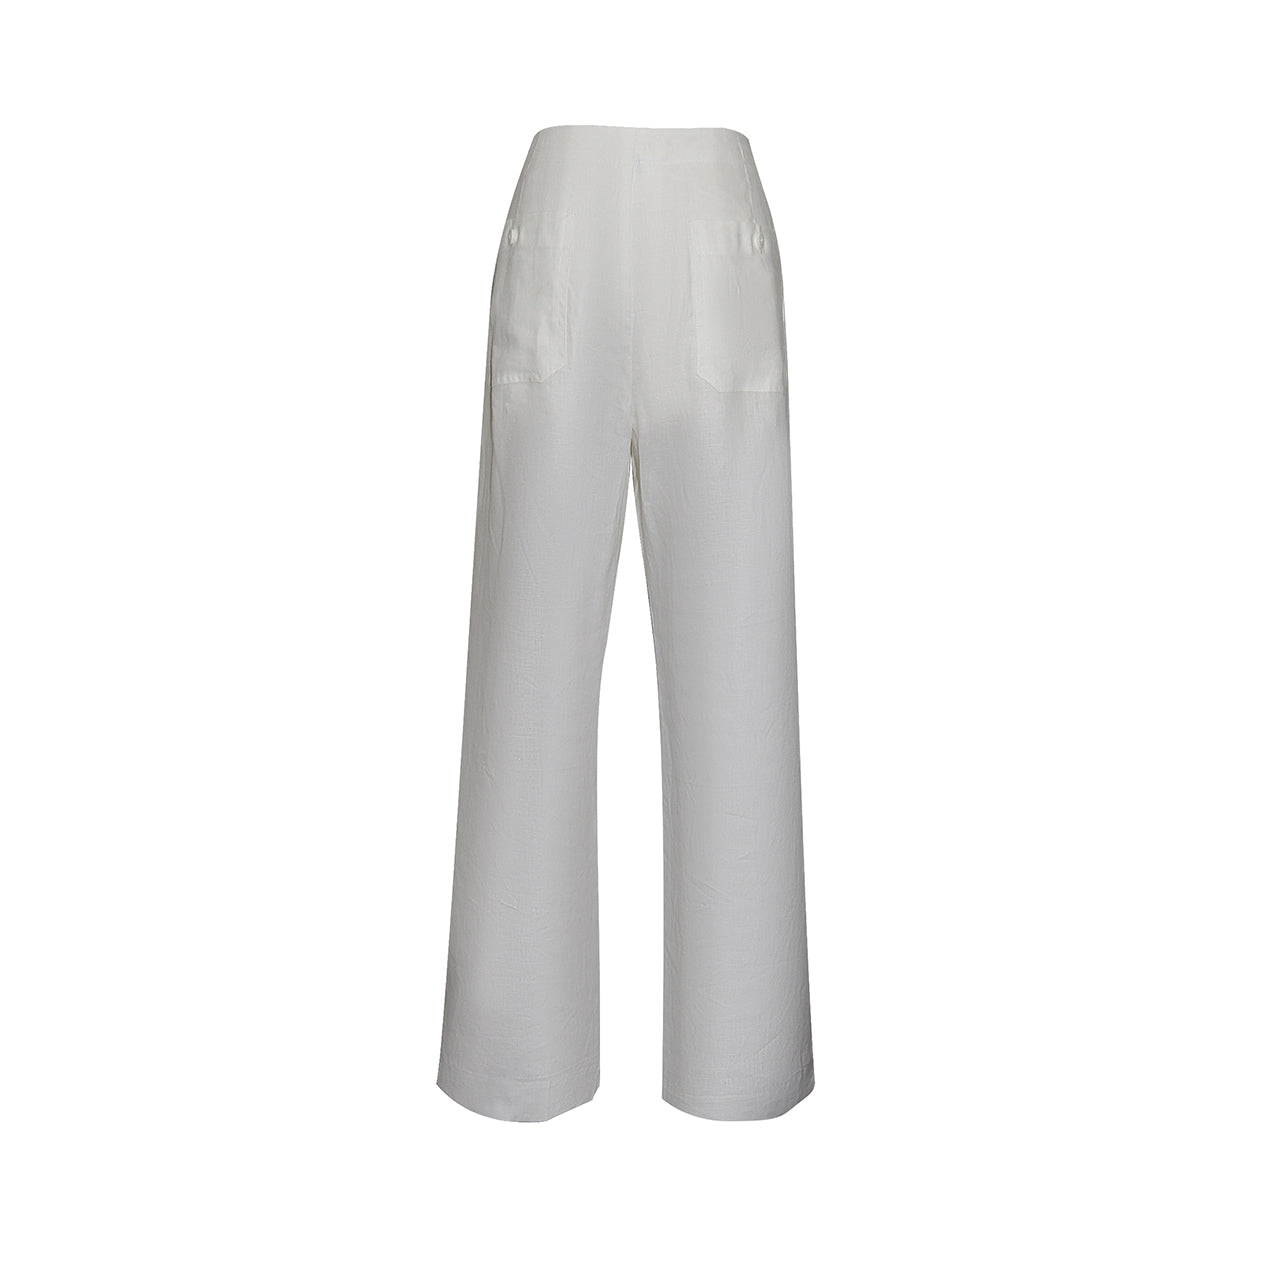 Discover SOFIA White Linen Pants by Gosia Orlowska